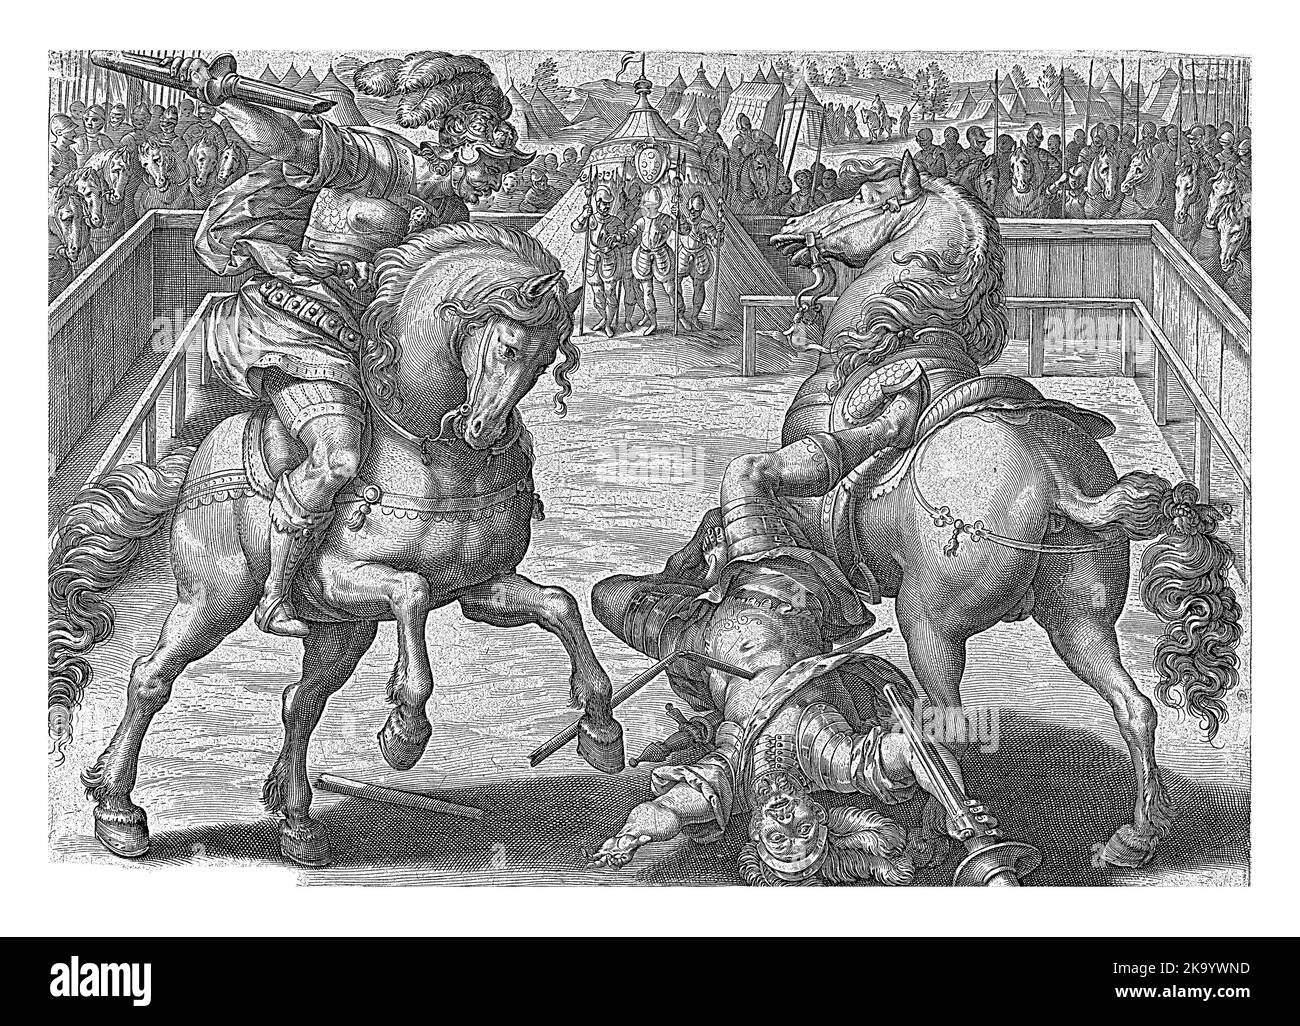 Giovanni de' Medici ha appena bussato il suo avversario al cavallo con la lancia. I due sono all'interno di una recinzione, circondata da un sacco di cavalieri. Foto Stock